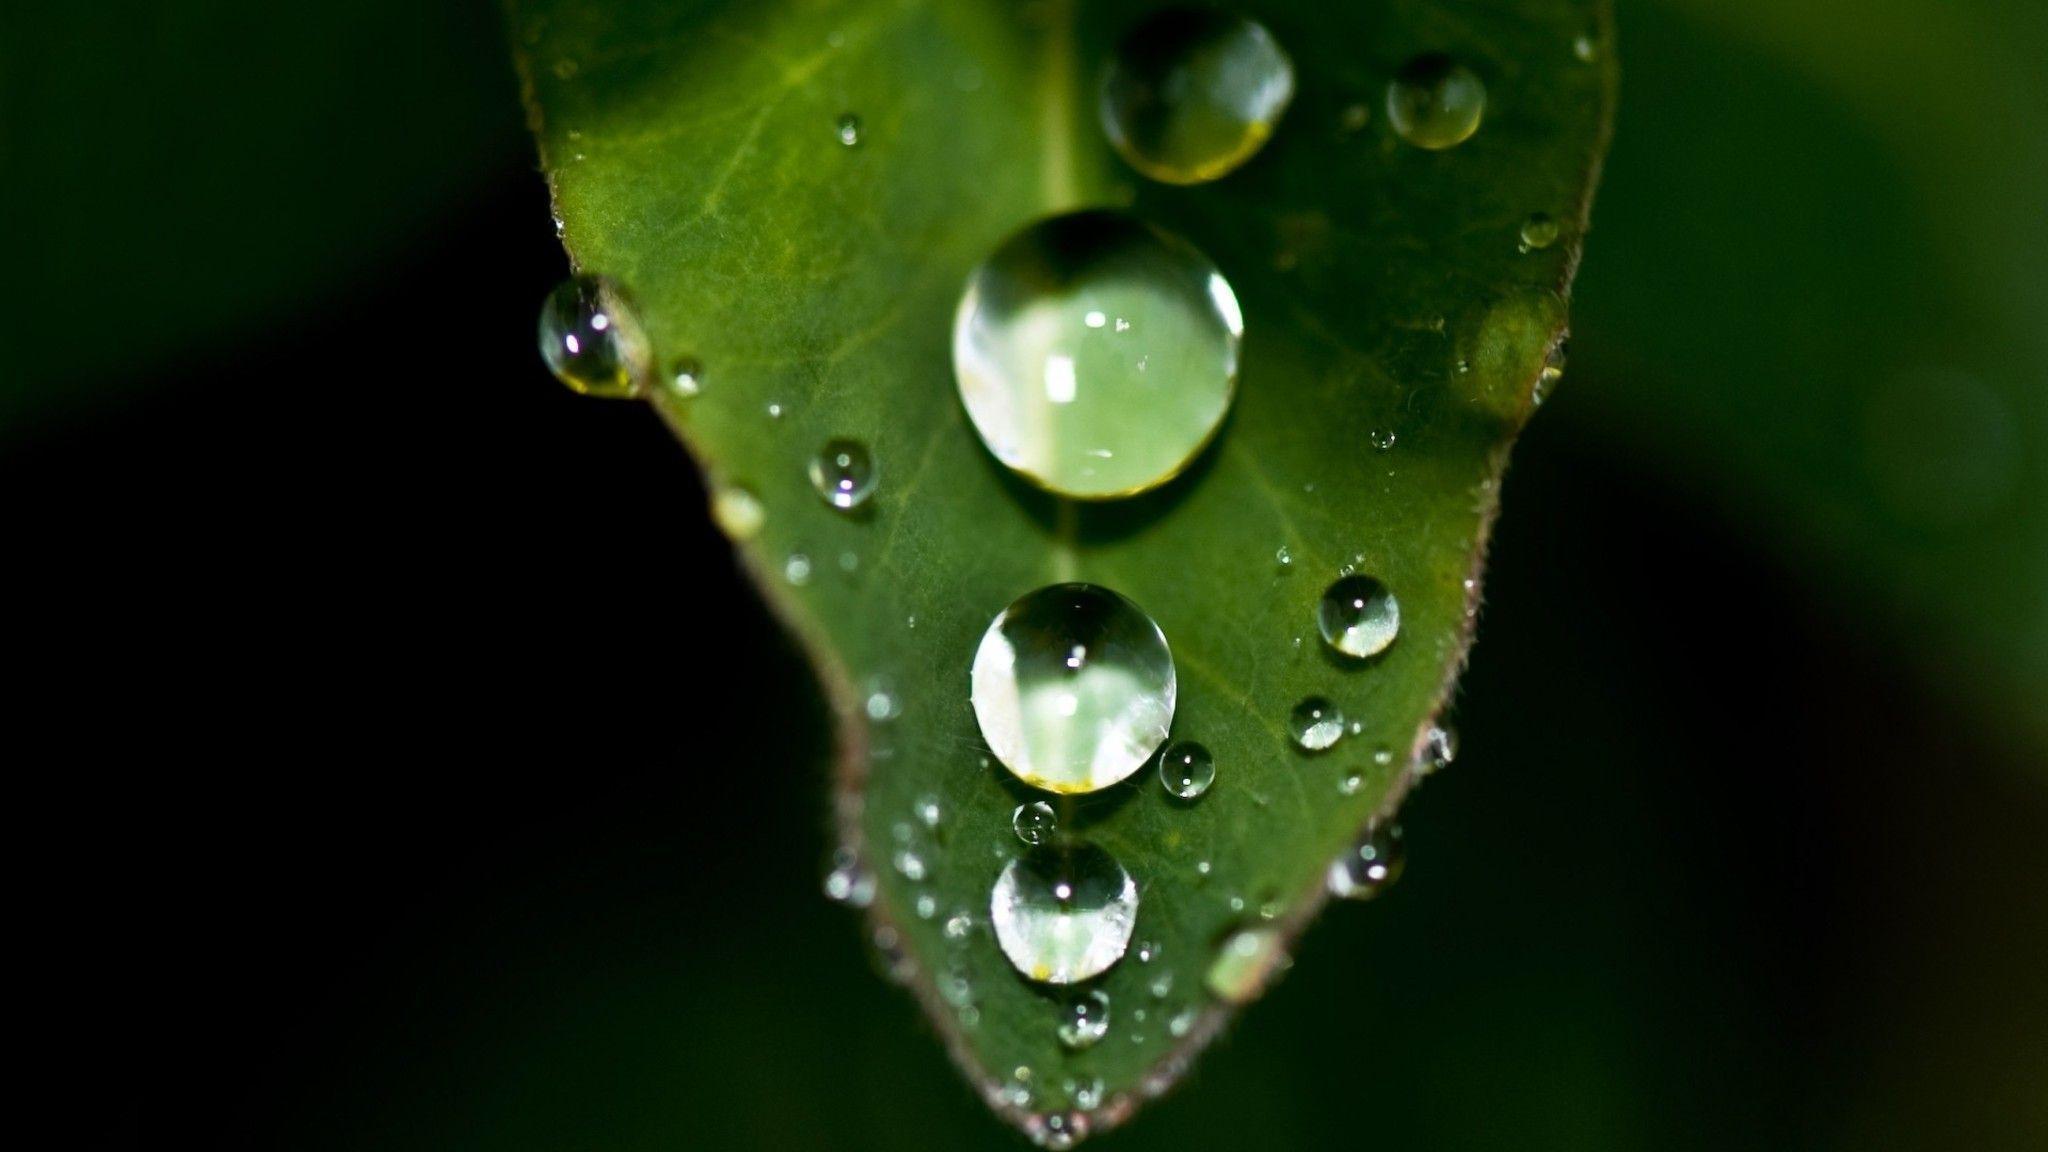 Dew drops green leaf wallpaper. PC